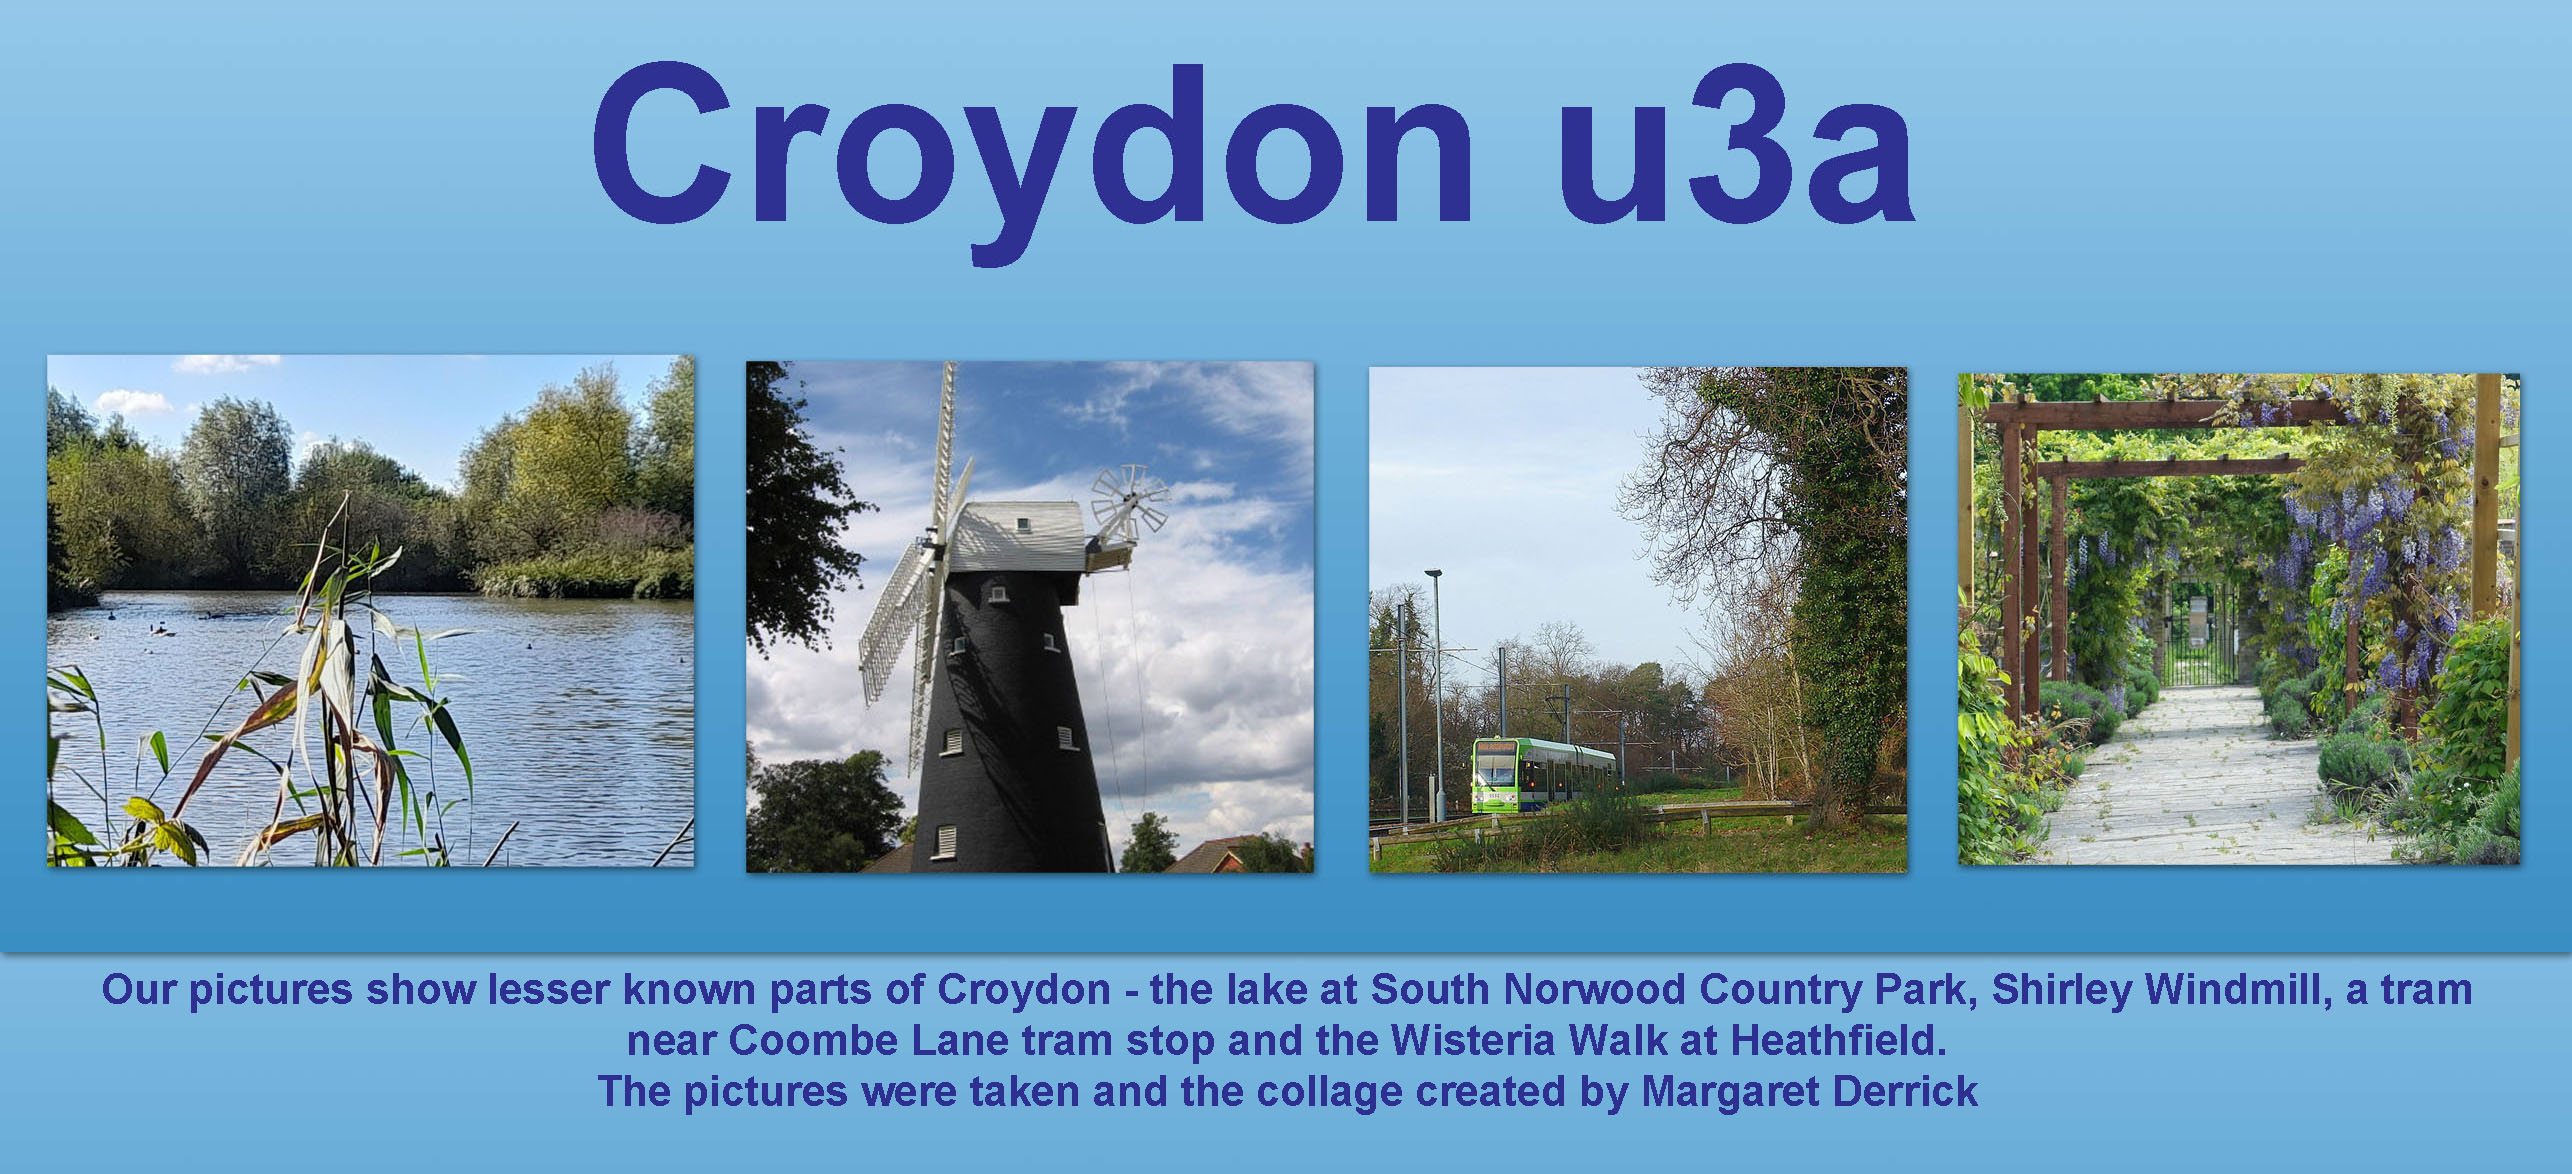 A Very Warm Welcome to Croydon u3a